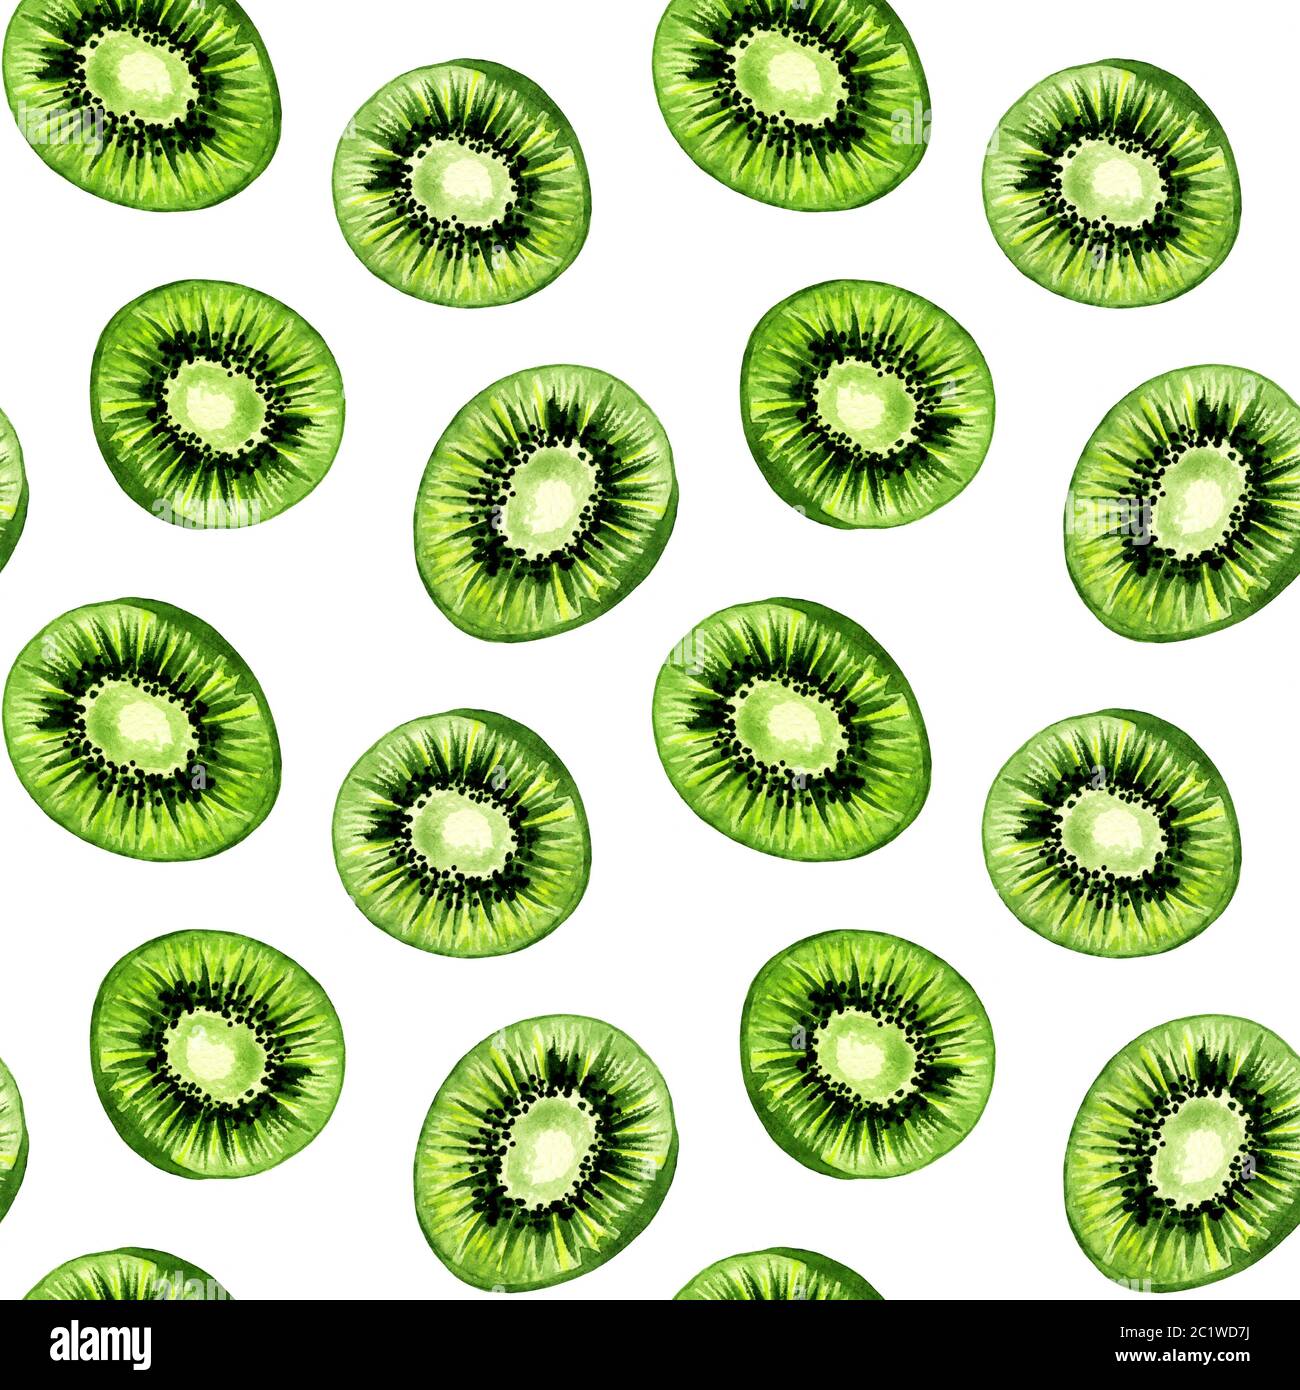 Motif kiwi, fond sans couture, fruits tropicaux dans la texture de dessin de peinture aquarelle. Motif de tranches de fruits kiwi, motif de nourriture d'été vert pour l'impression textile ou textile et le décor de fond Banque D'Images